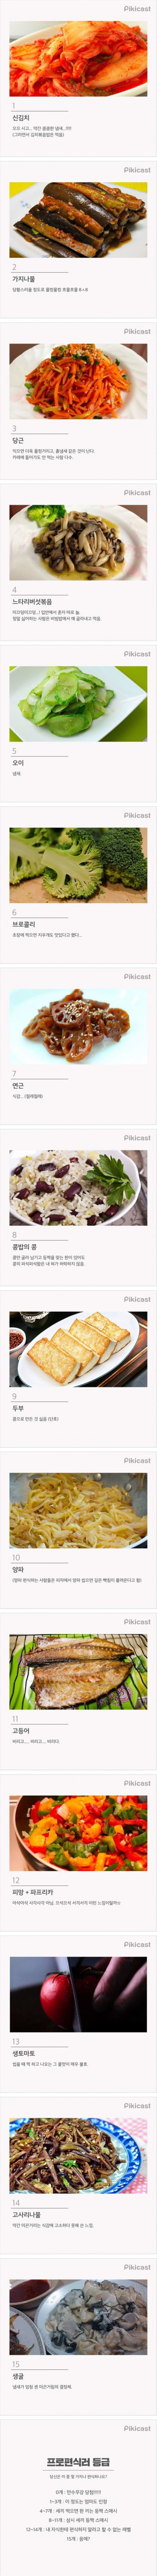 한국인이 많이 편식하는 음식..jpg